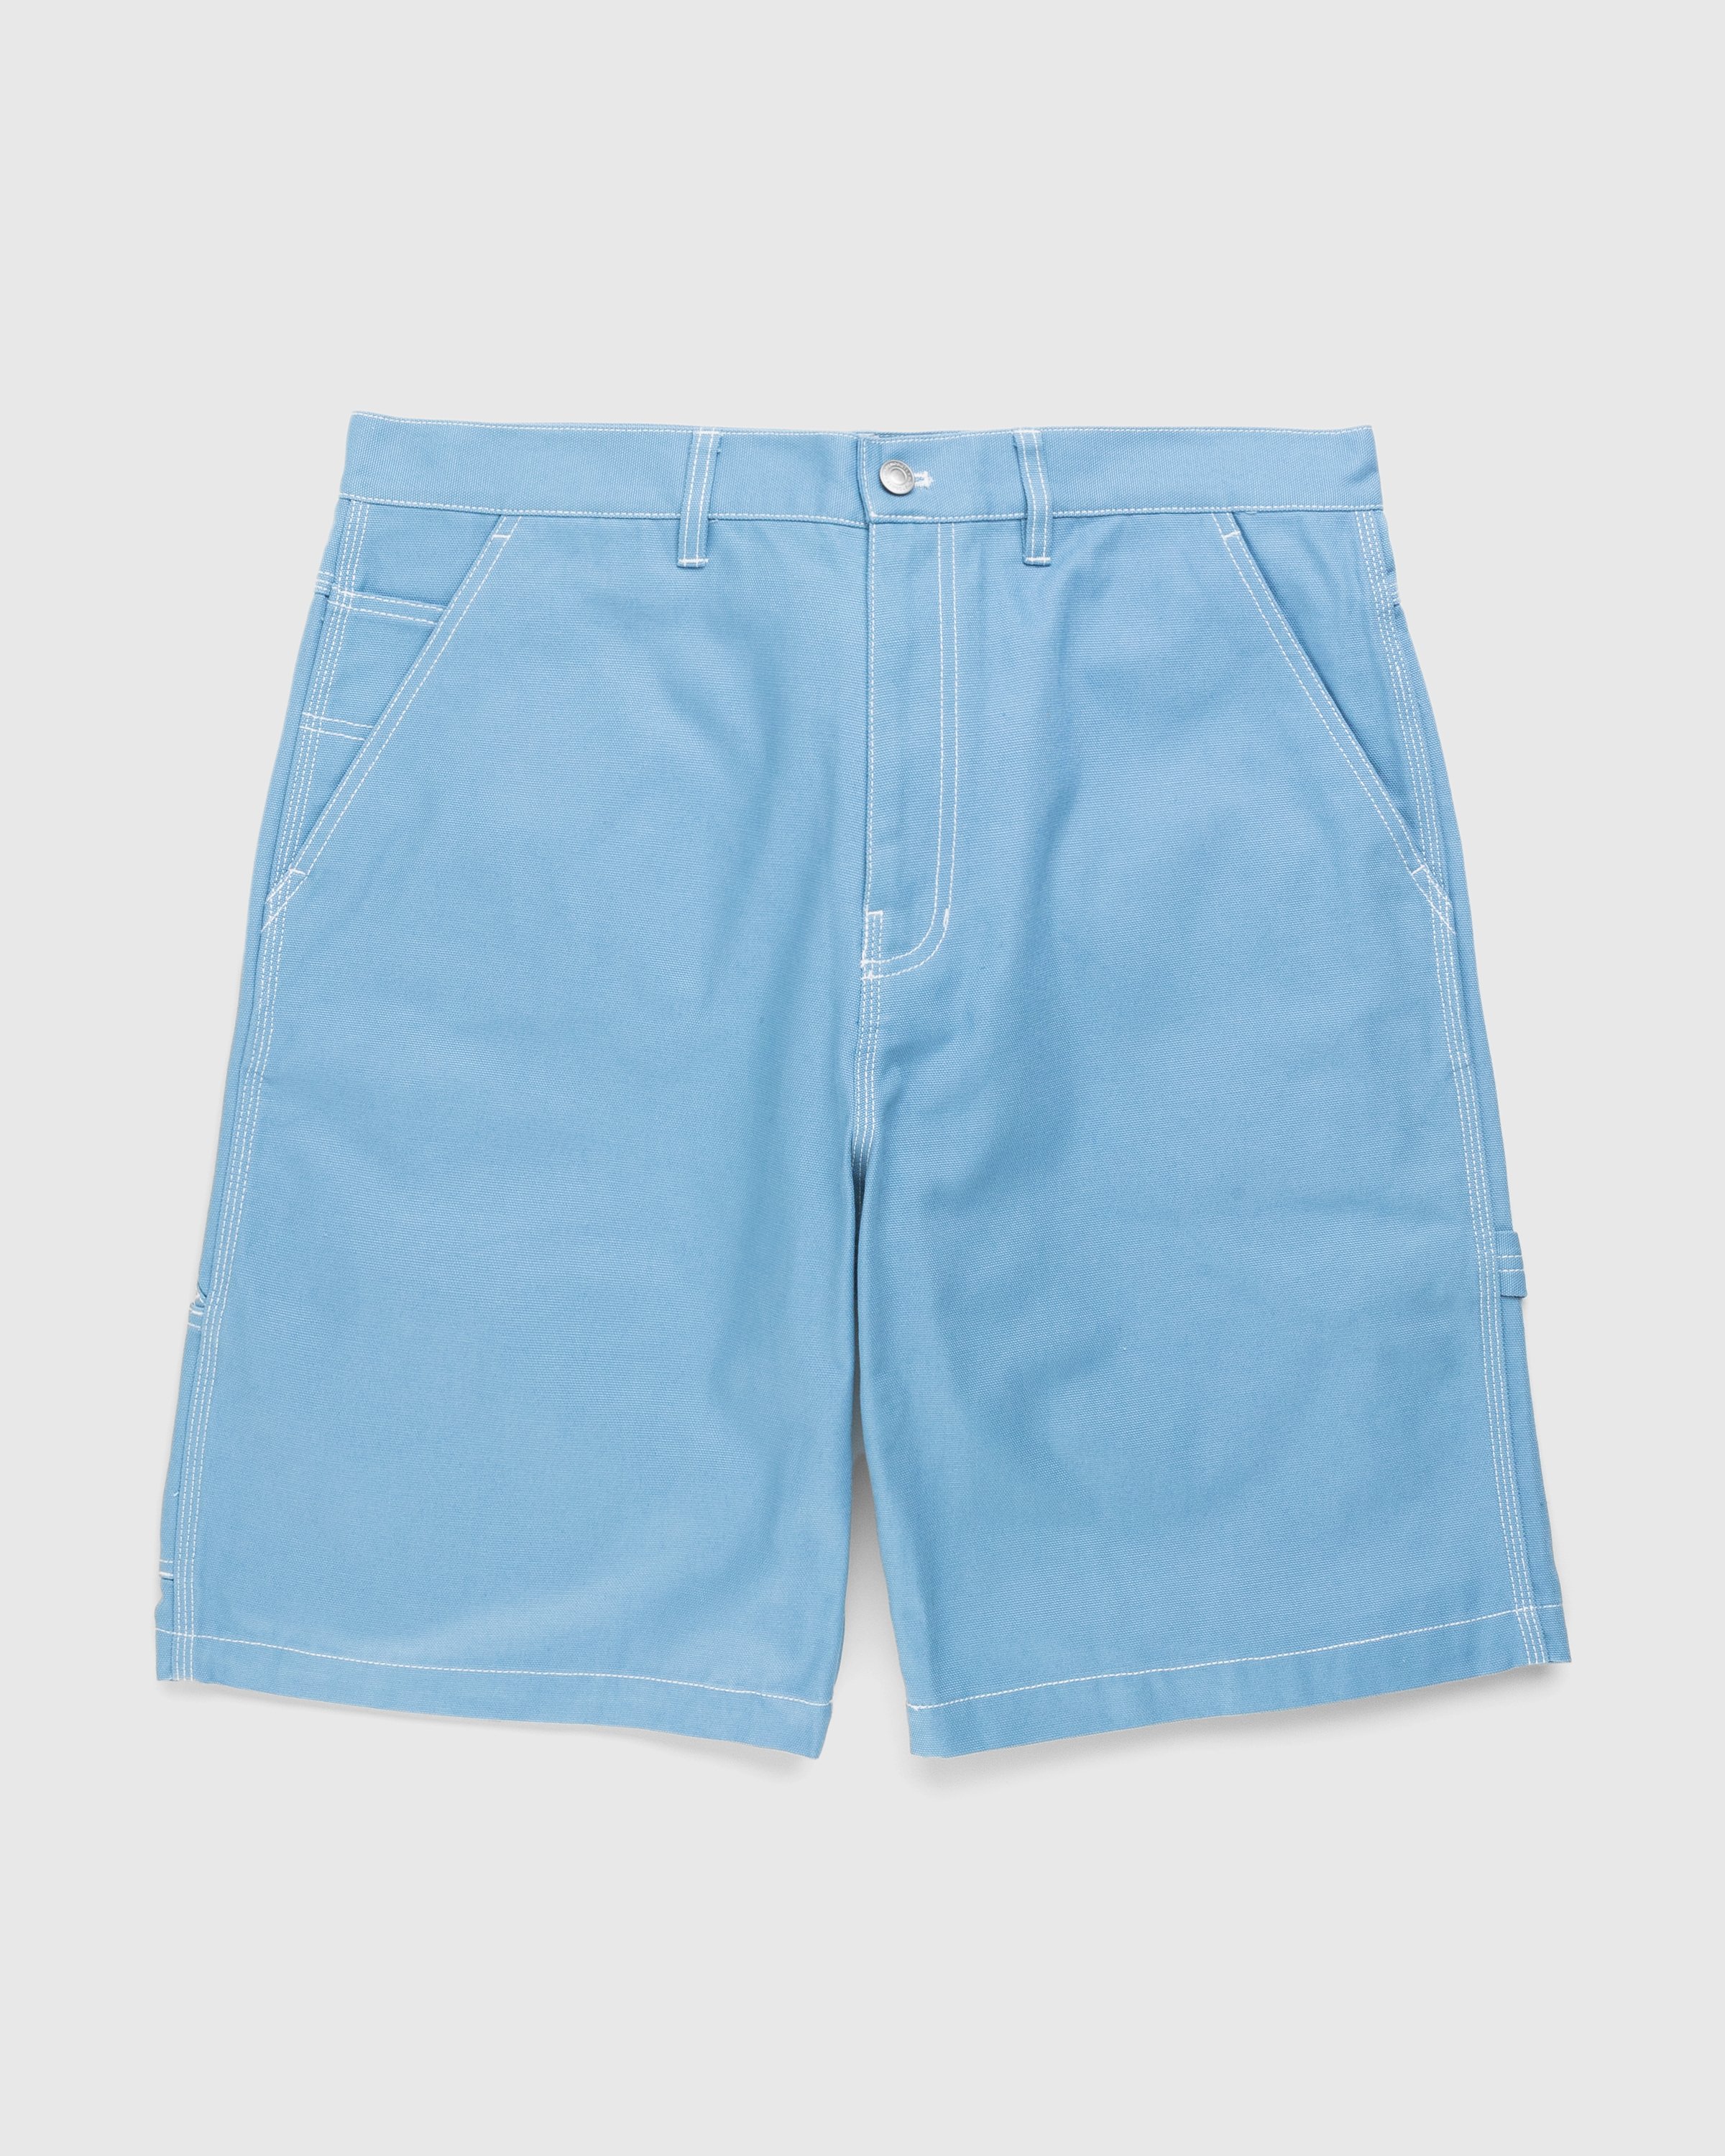 Highsnobiety - Carpenter Shorts Light Blue - Clothing - Blue - Image 1